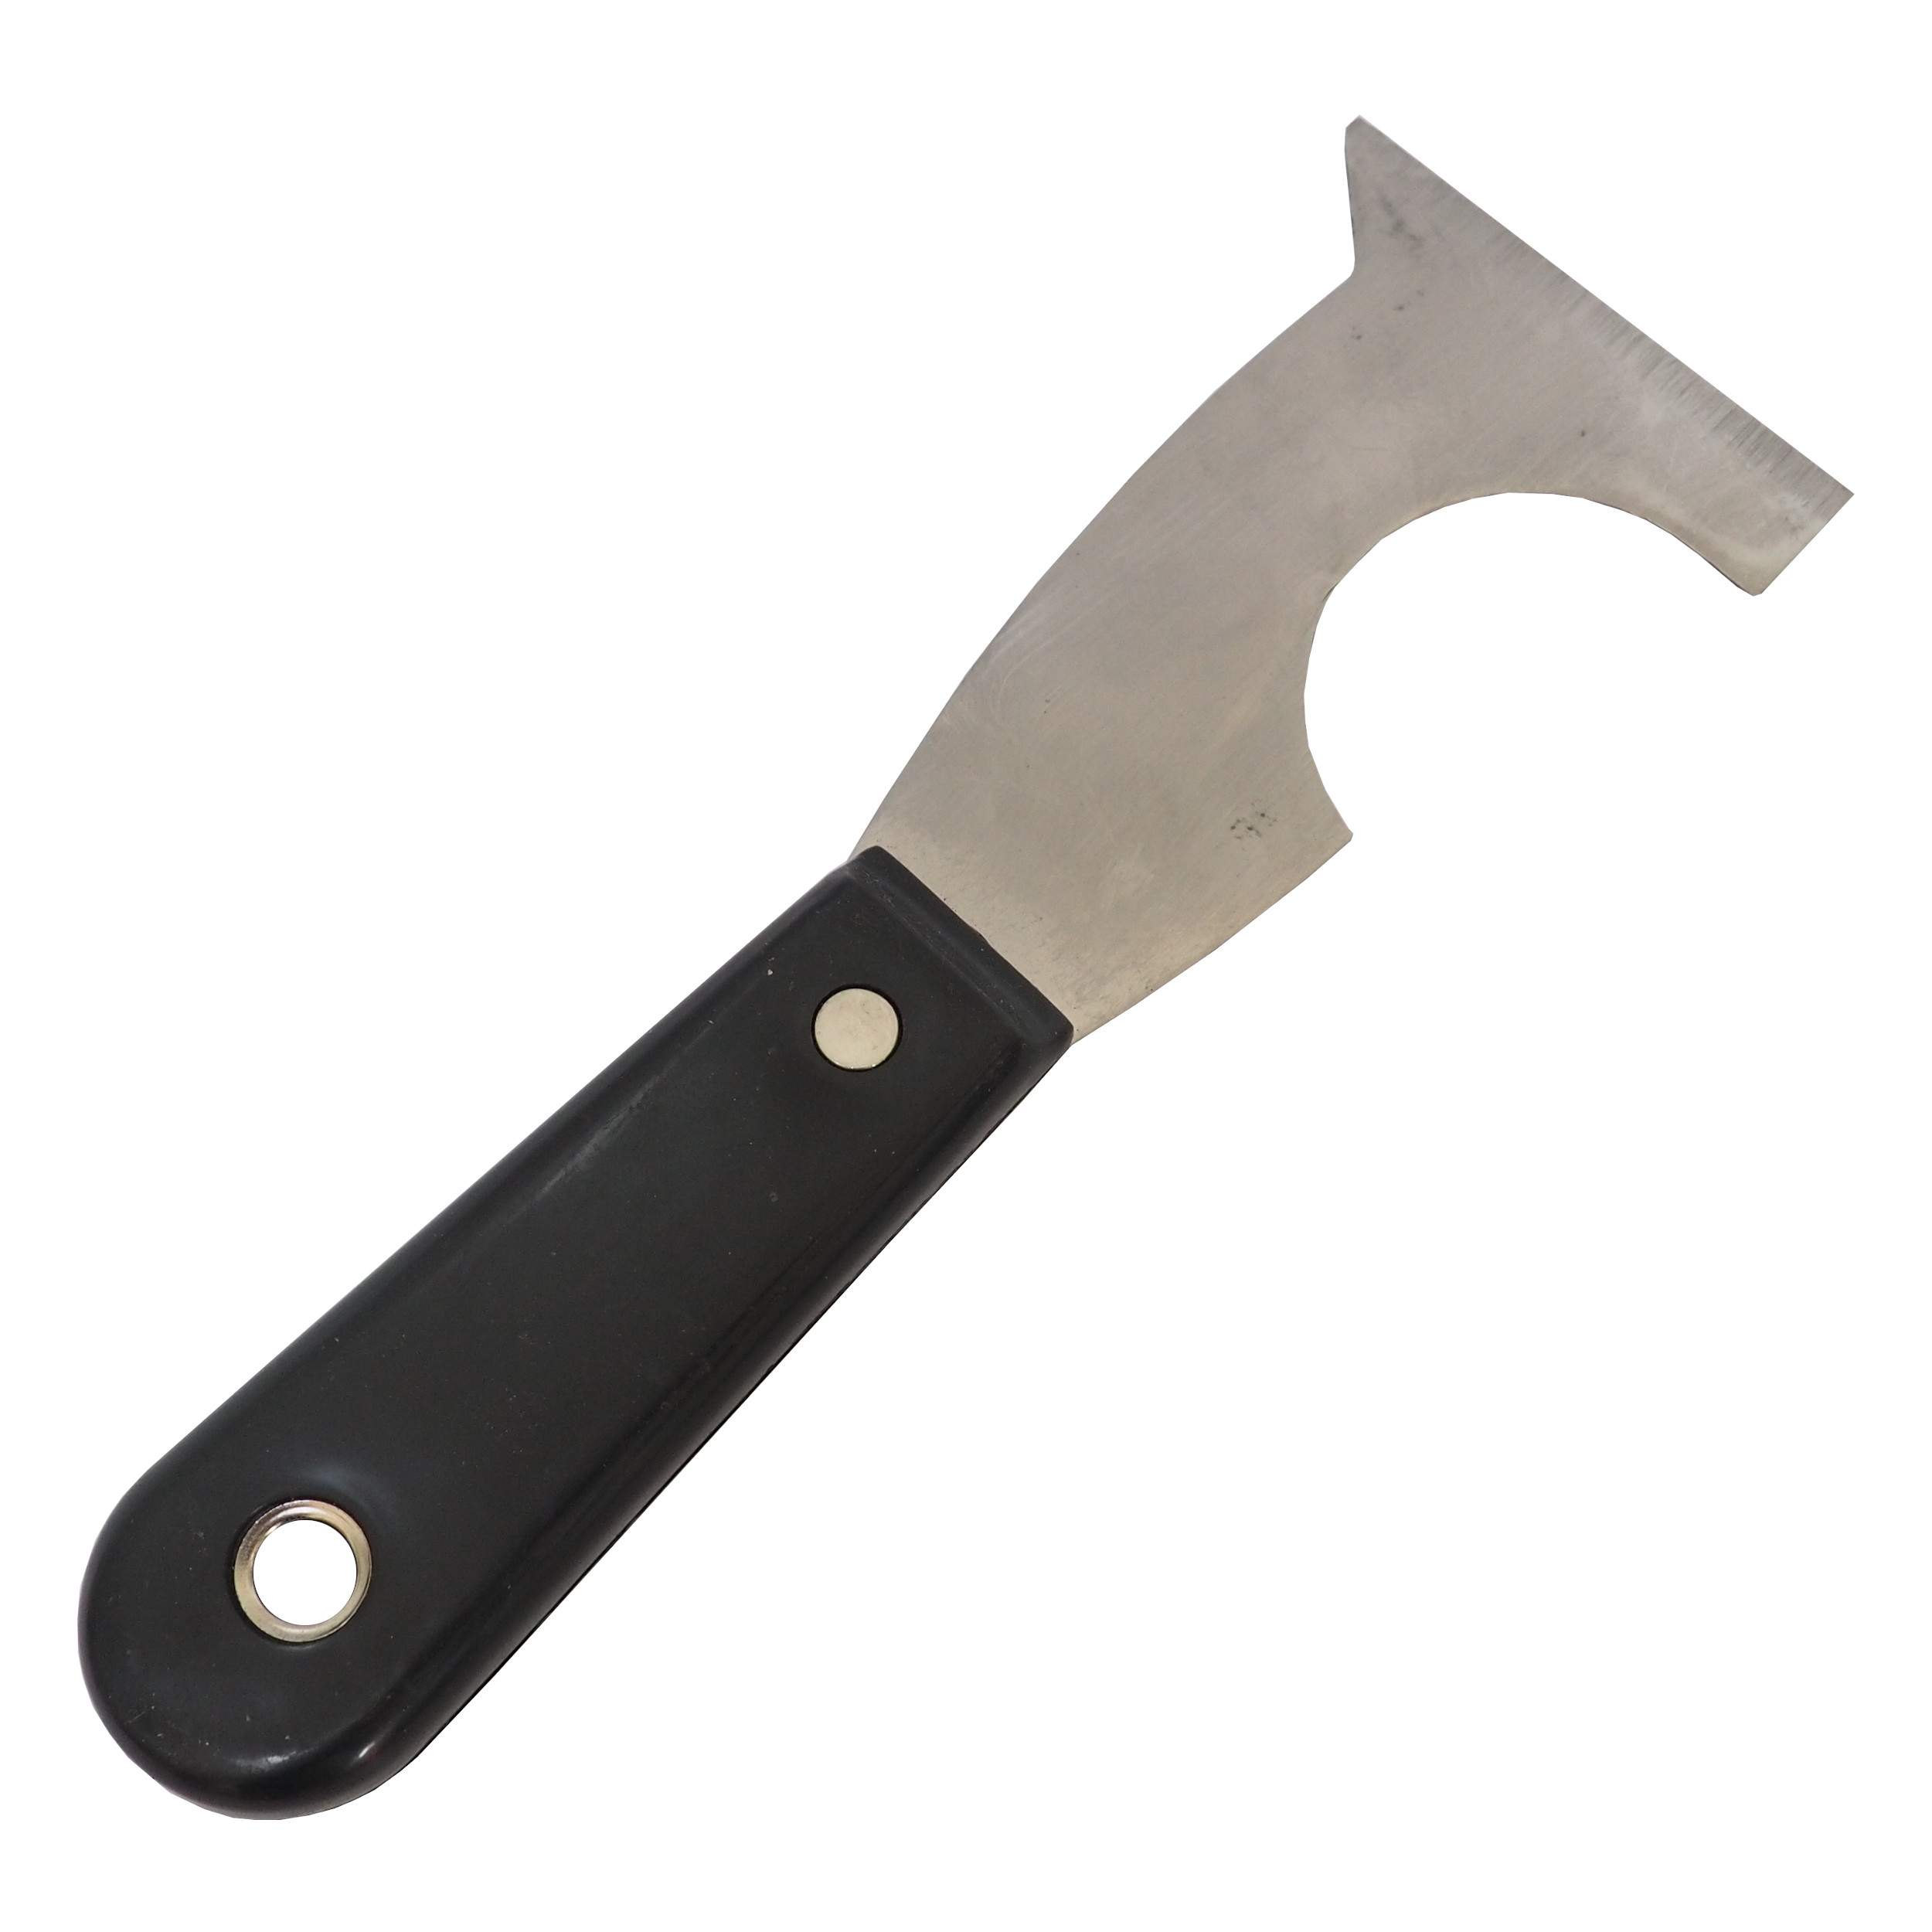 TOPTRADE špachtle chromovaná nůž tvarovaný, s plastovou,  nýtovananou rukojetí, profi 0.09 Kg TOP Sklad4 500443 540